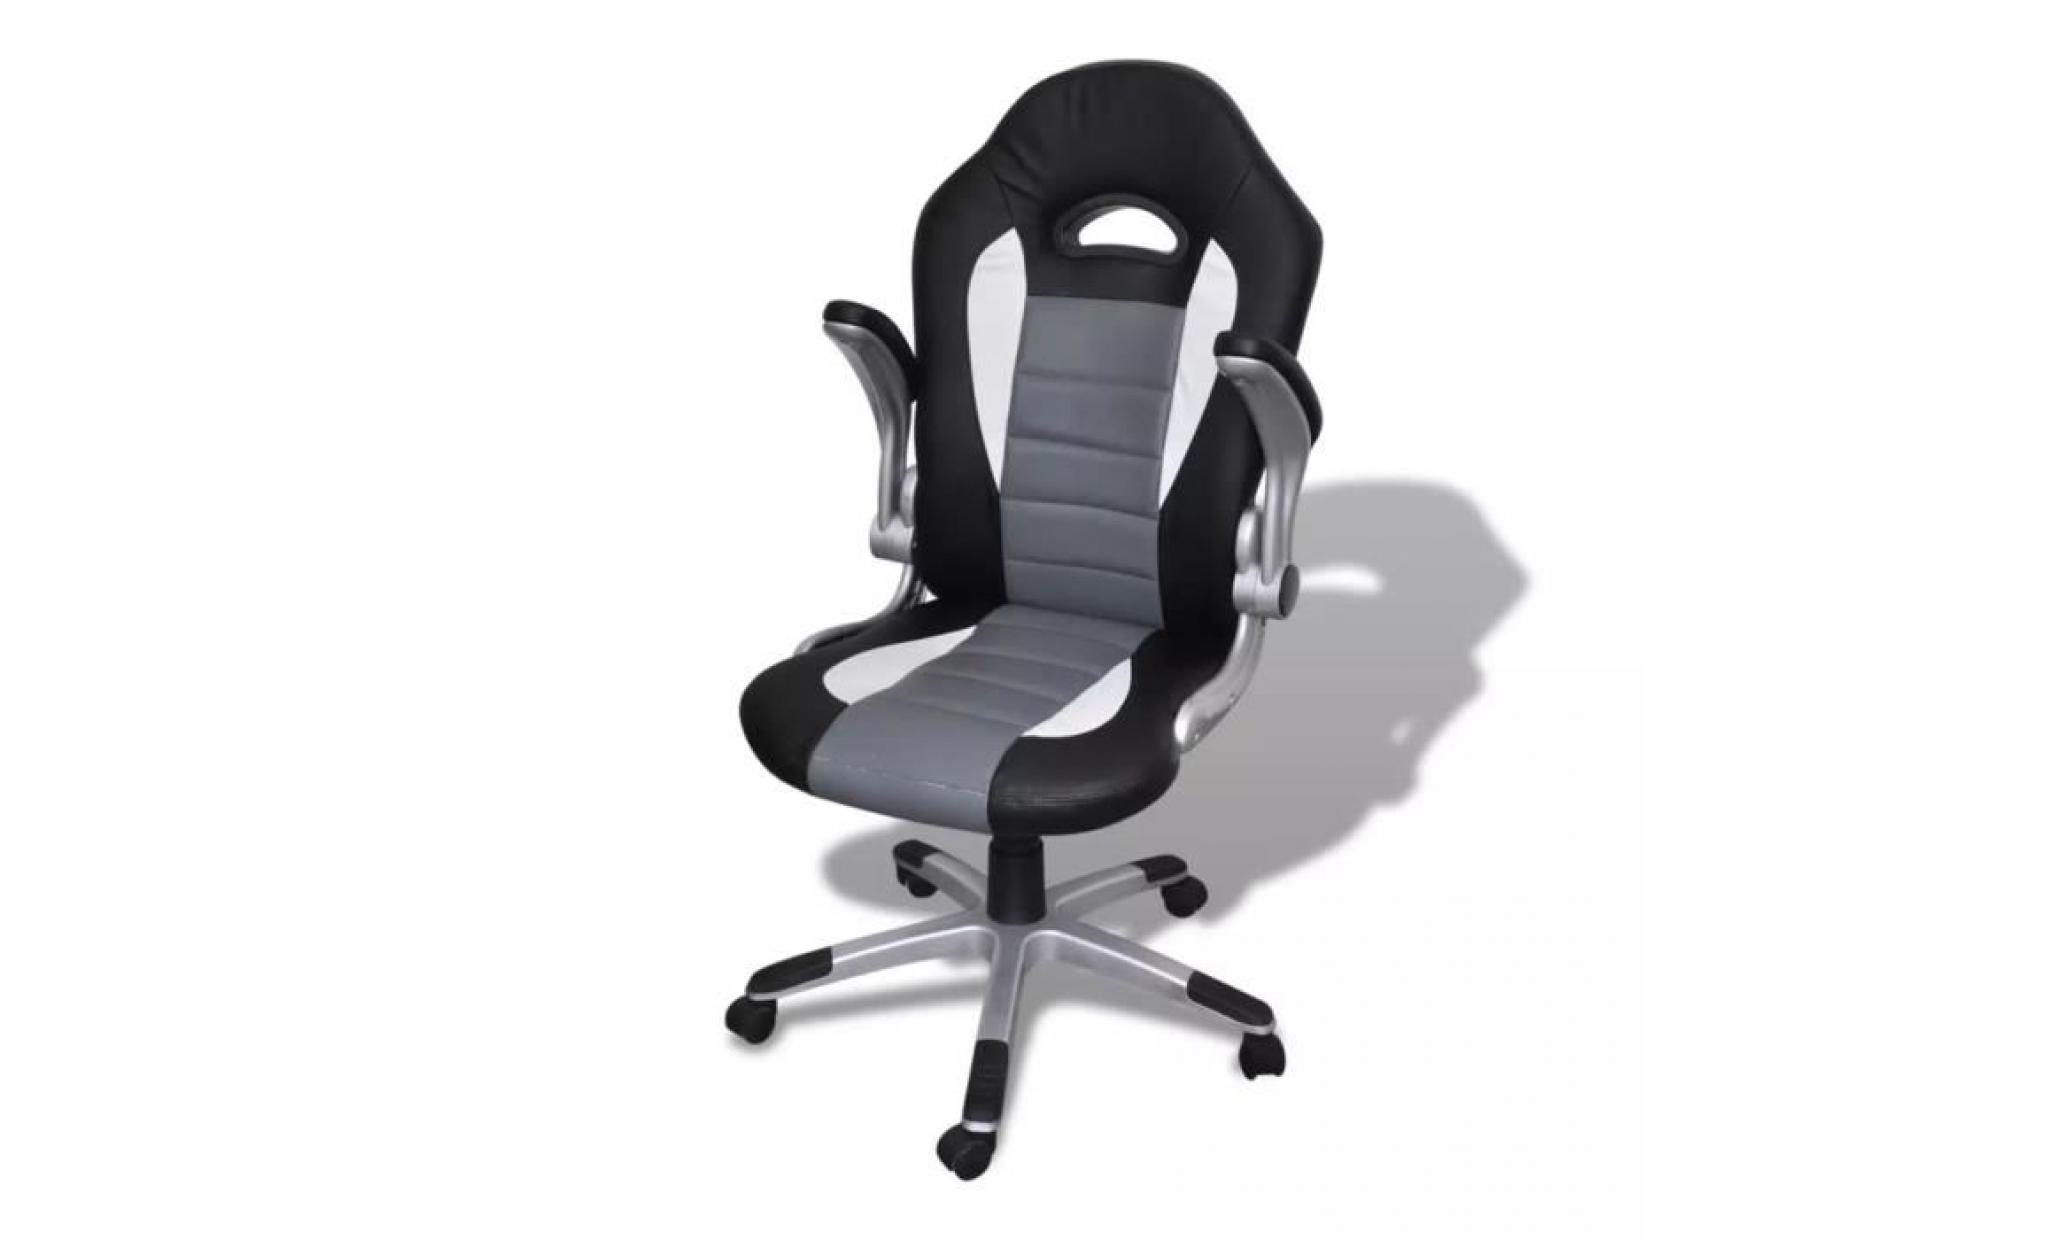 fauteuil de bureau sièges 63 x 70 x 114  124 cm chaise de bureau scandinave contemporainengris design moderne pas cher